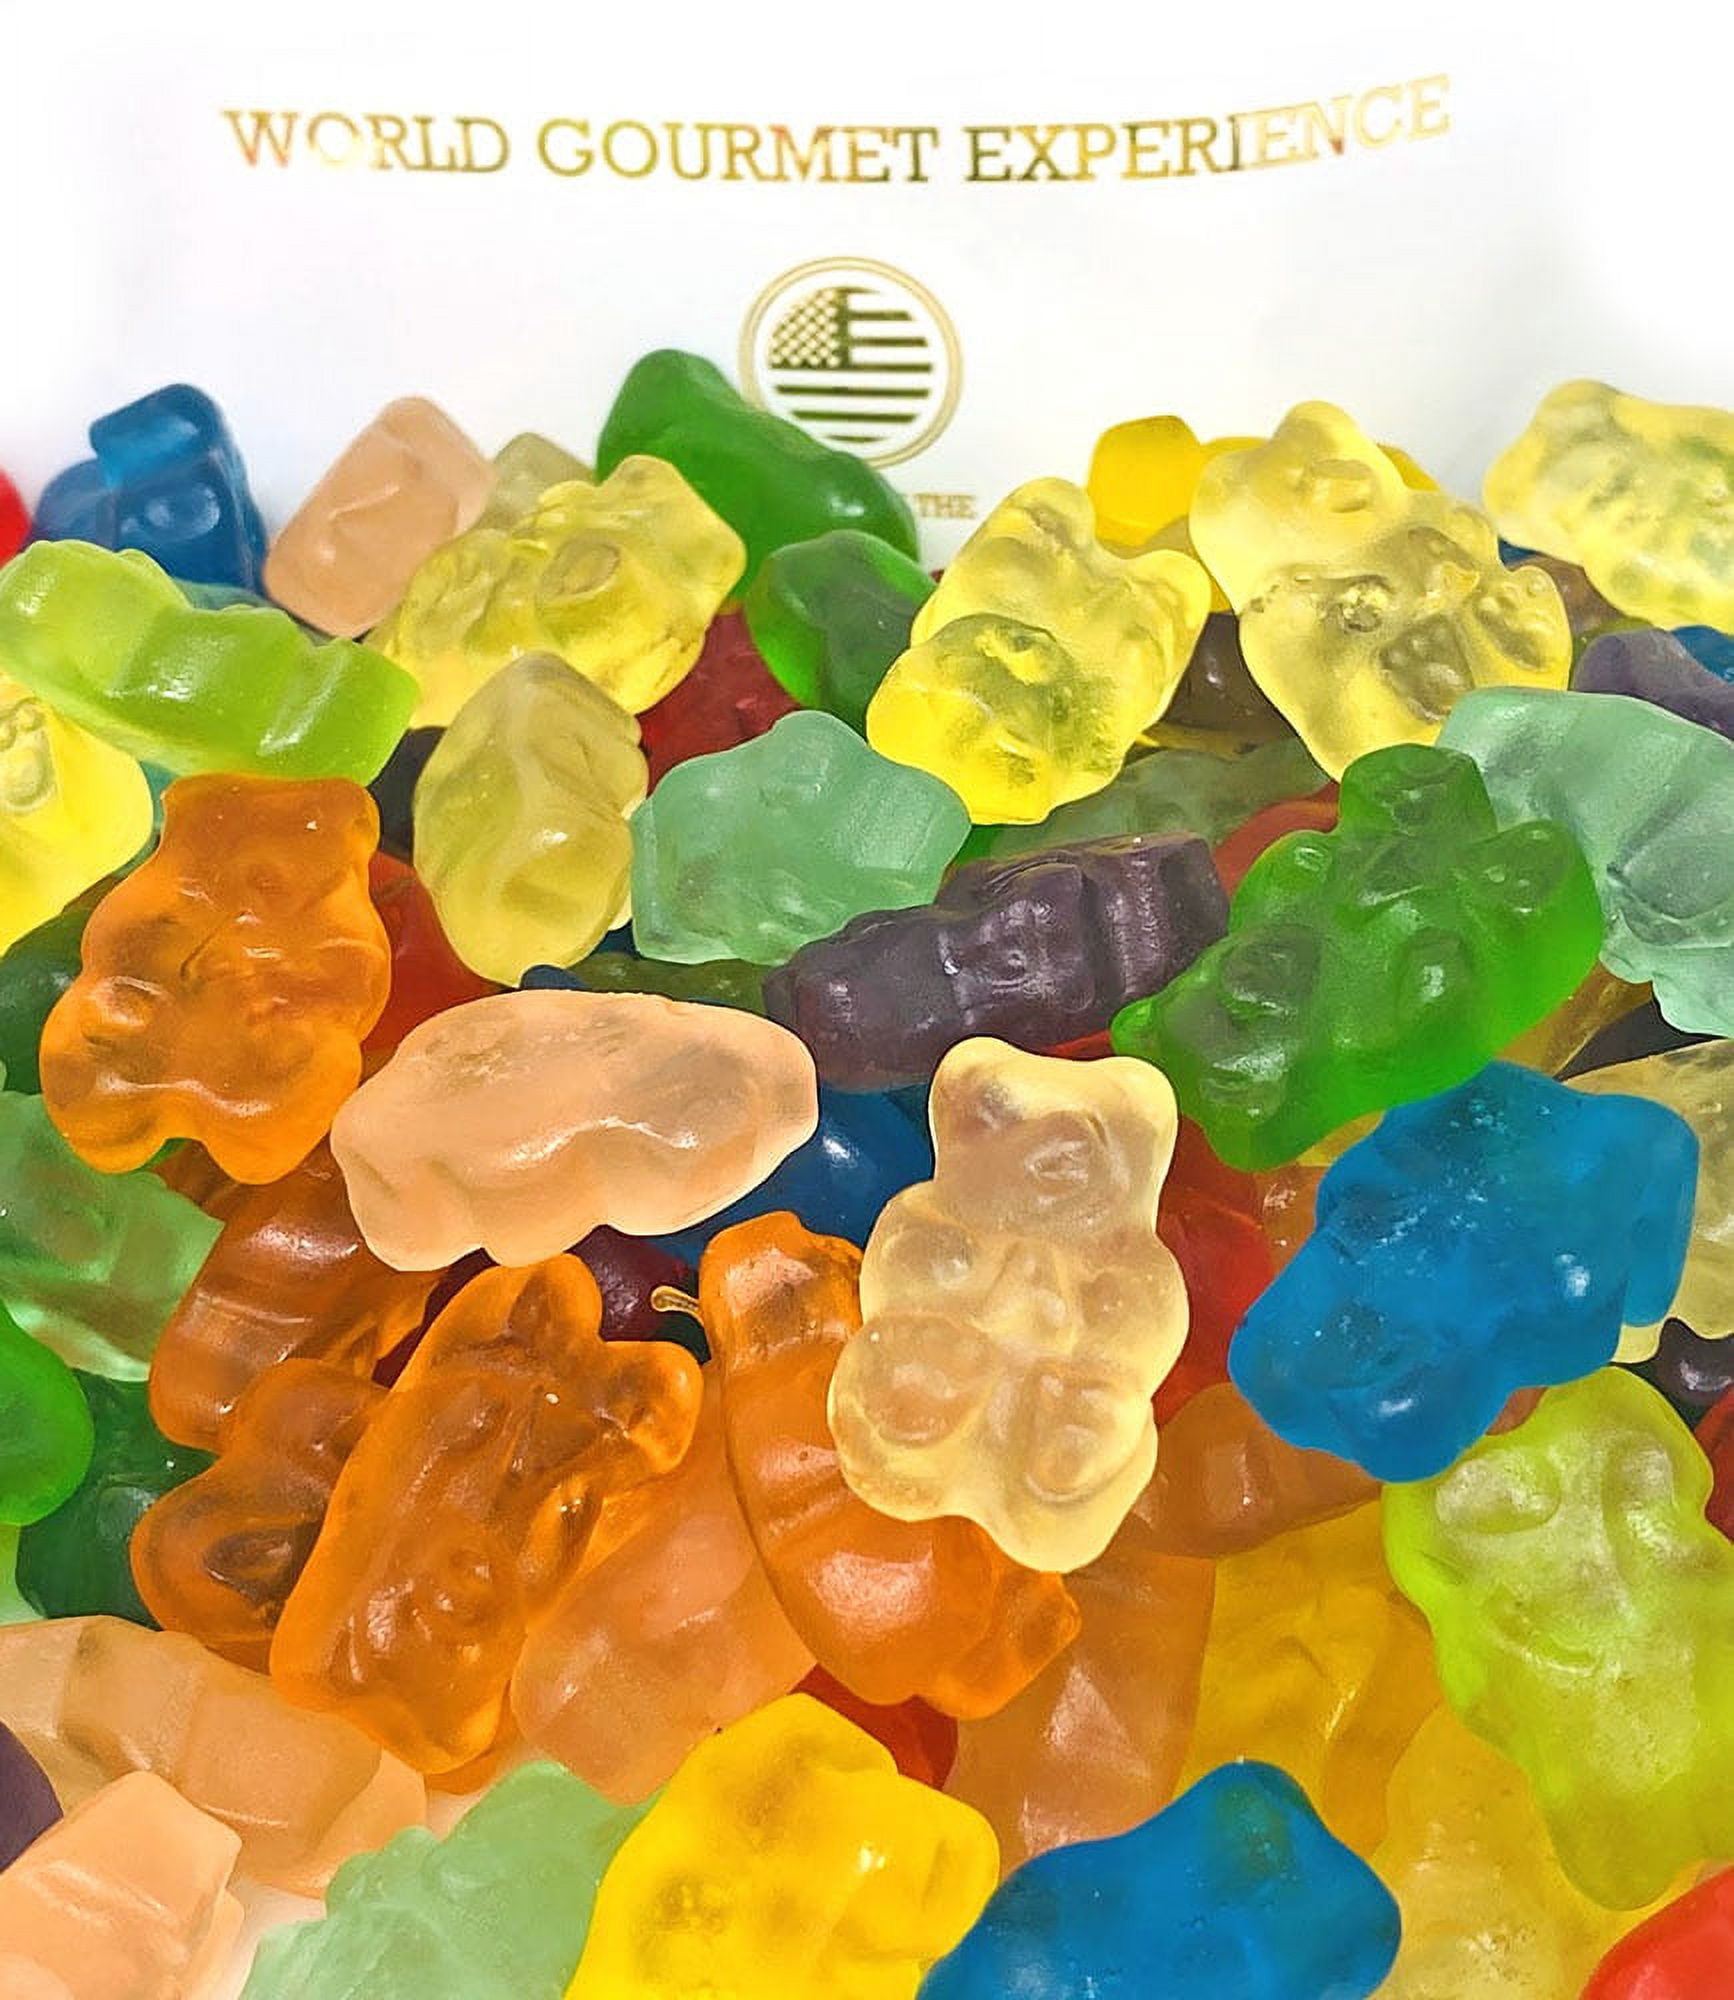 Gummy Bears – Werner Gourmet Meat Snacks